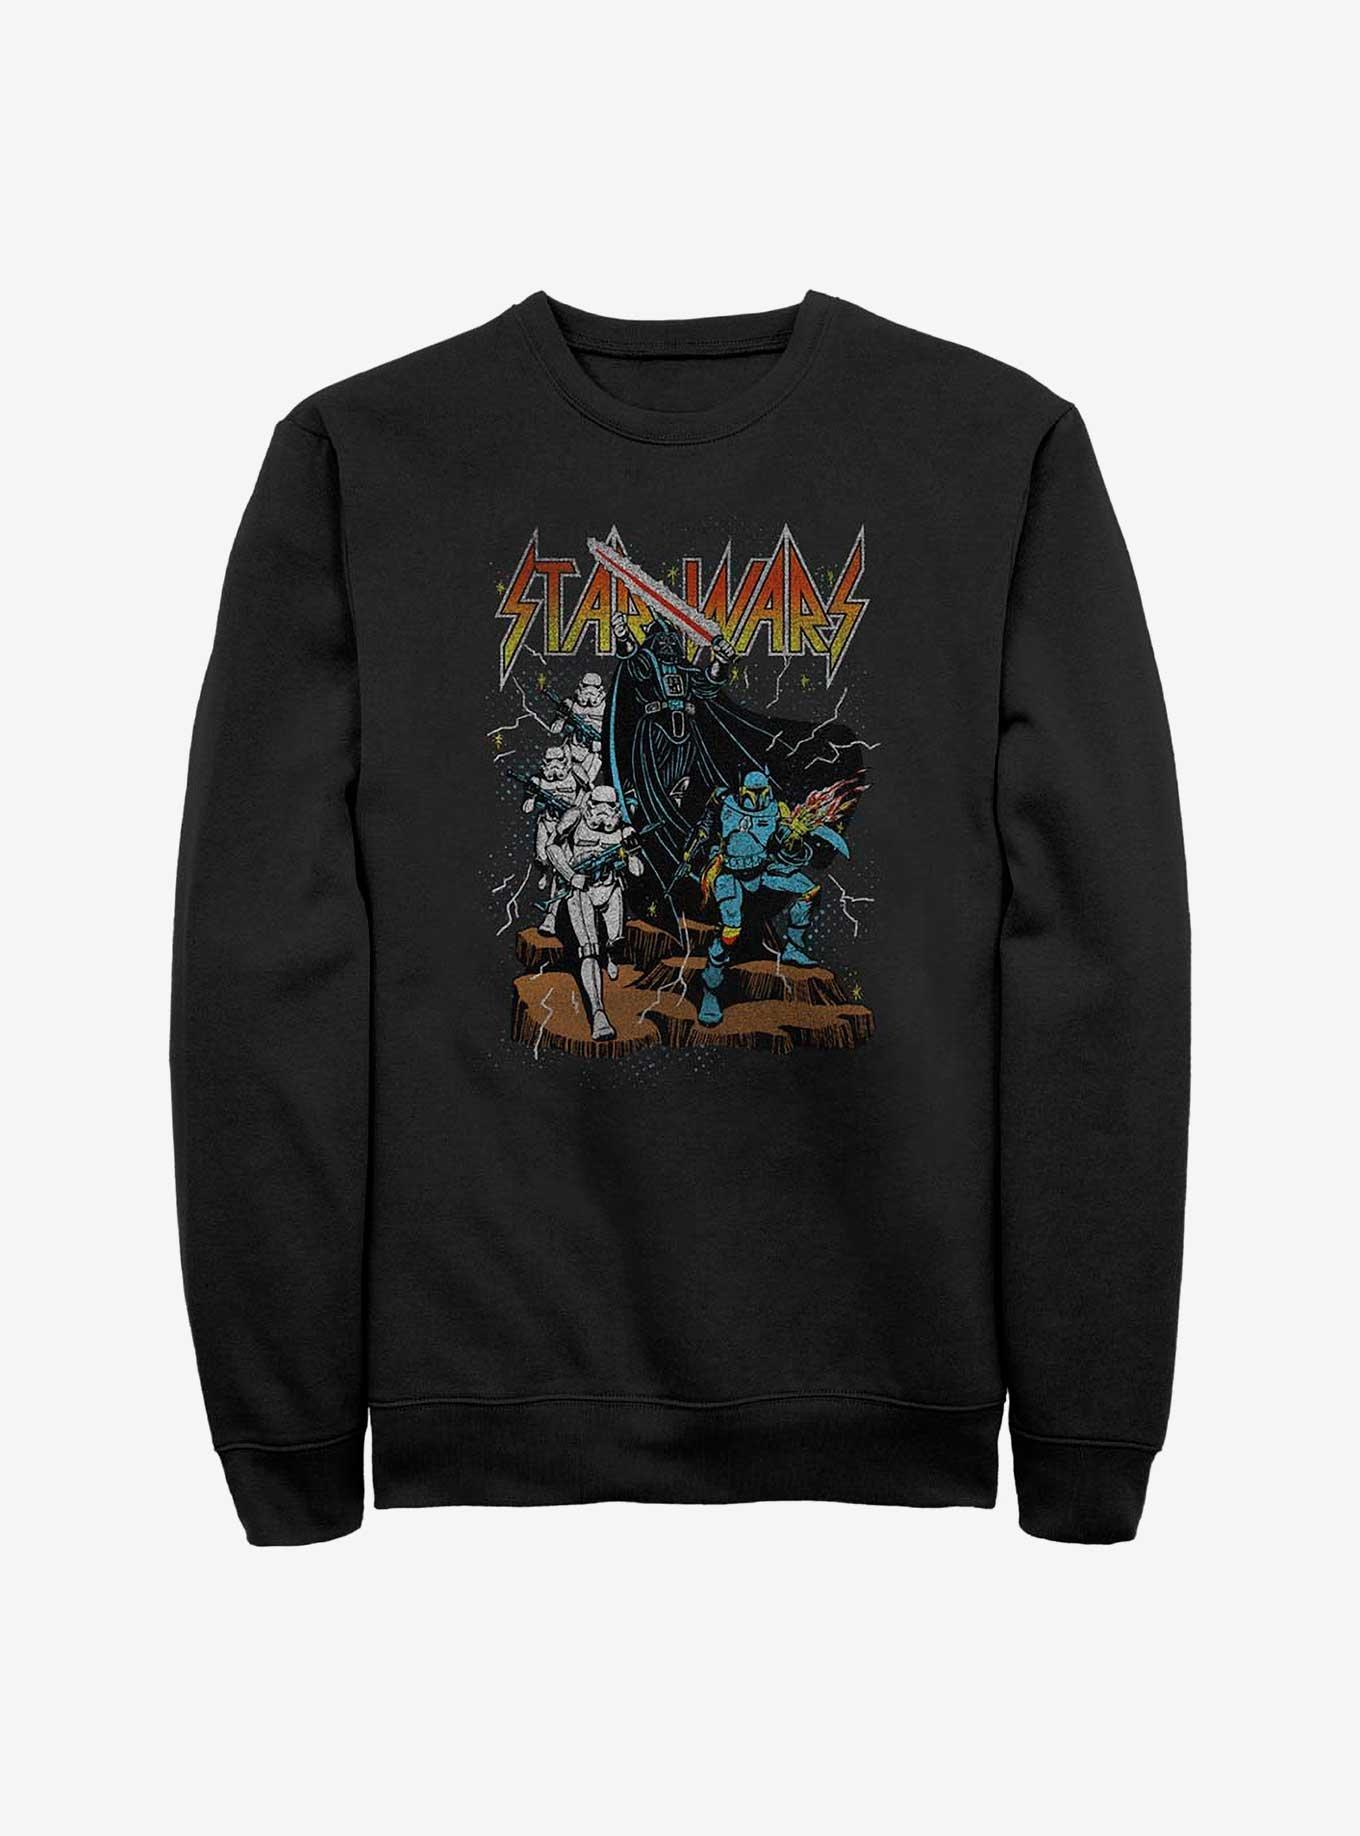 Star Wars Metal Band Logo Sweatshirt, BLACK, hi-res